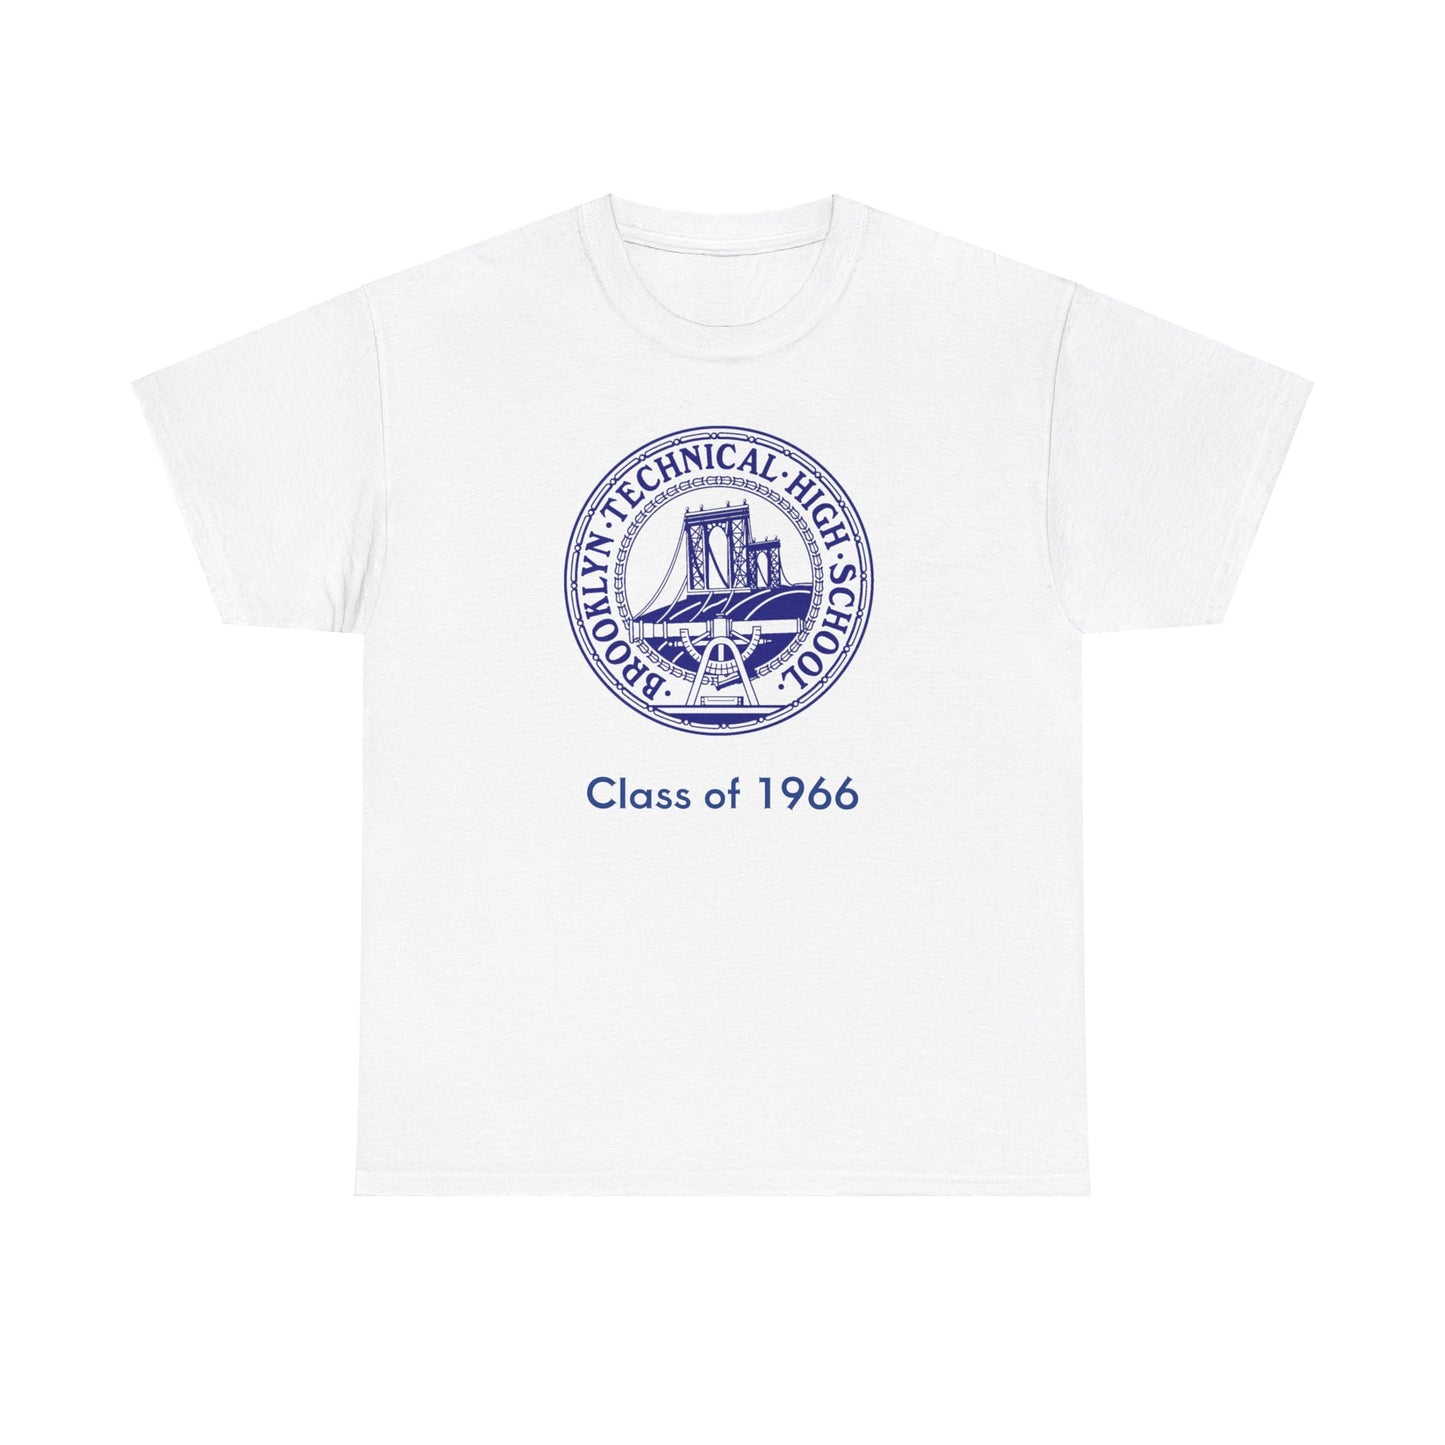 Classic Tech Seal - Men's Heavy Cotton T-Shirt - Class Of 1966